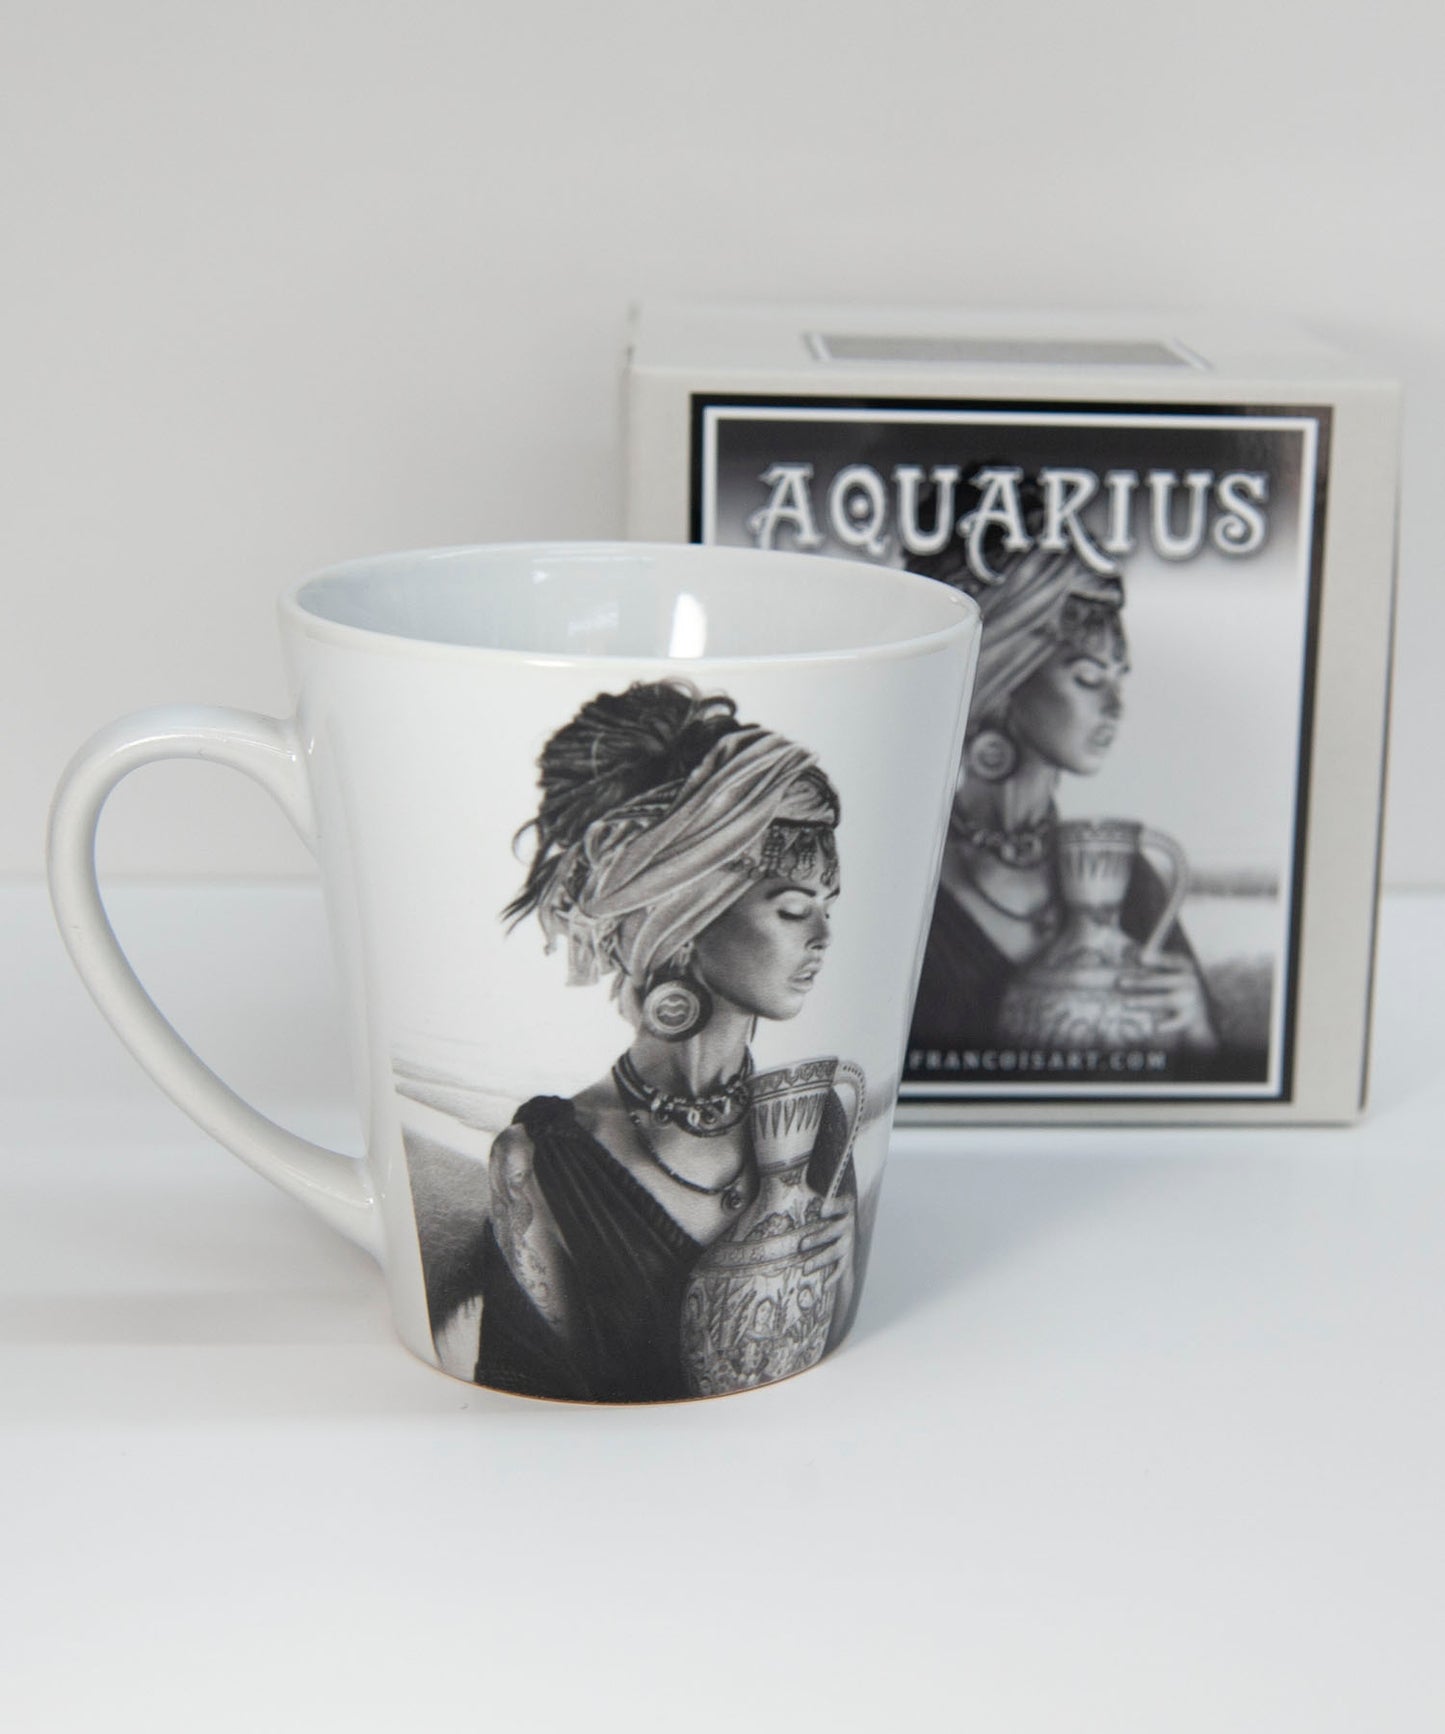 'Aquarius' ceramic mug